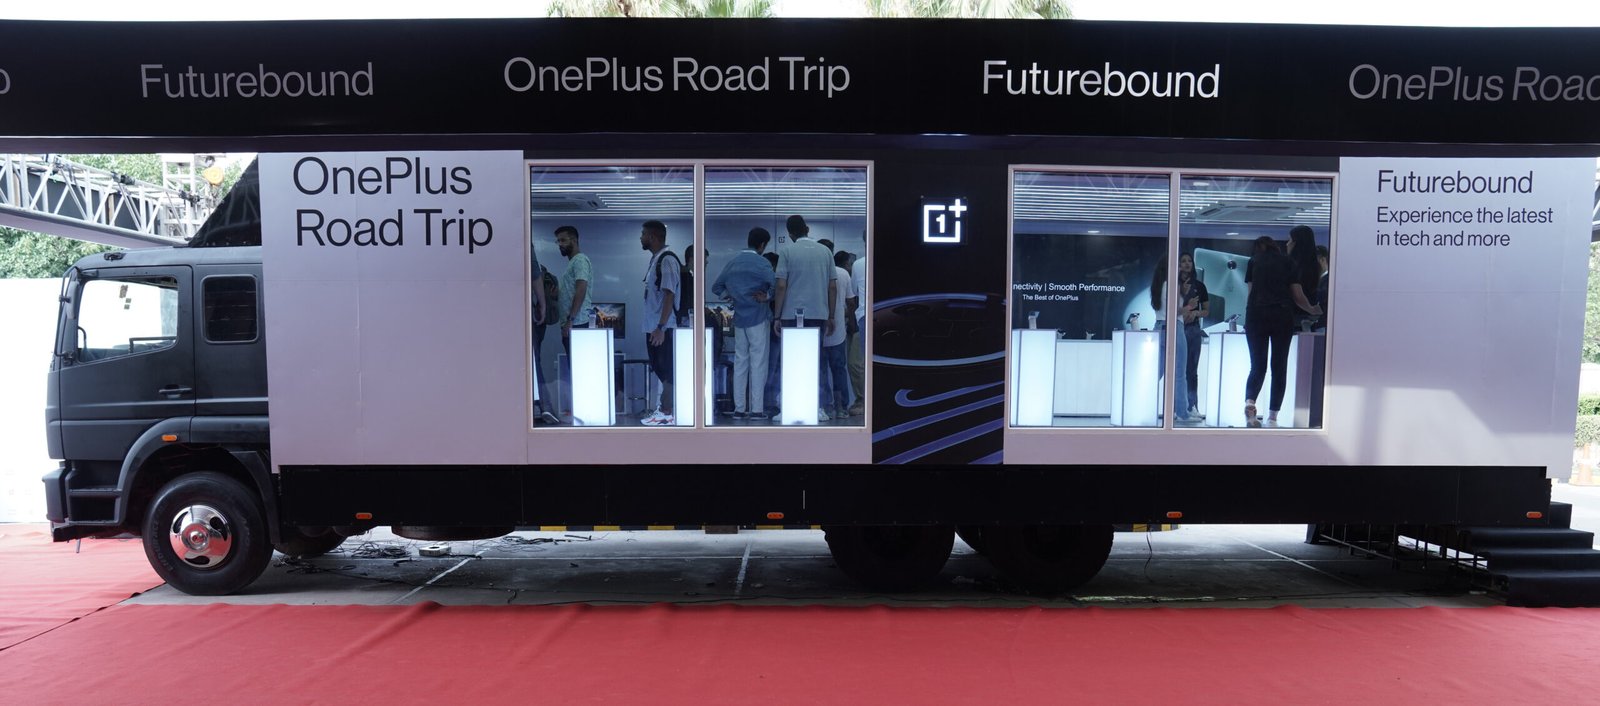 OnePlus kicks off OnePlus Road Trip - Futurebound, begins nationwide tour with Delhi